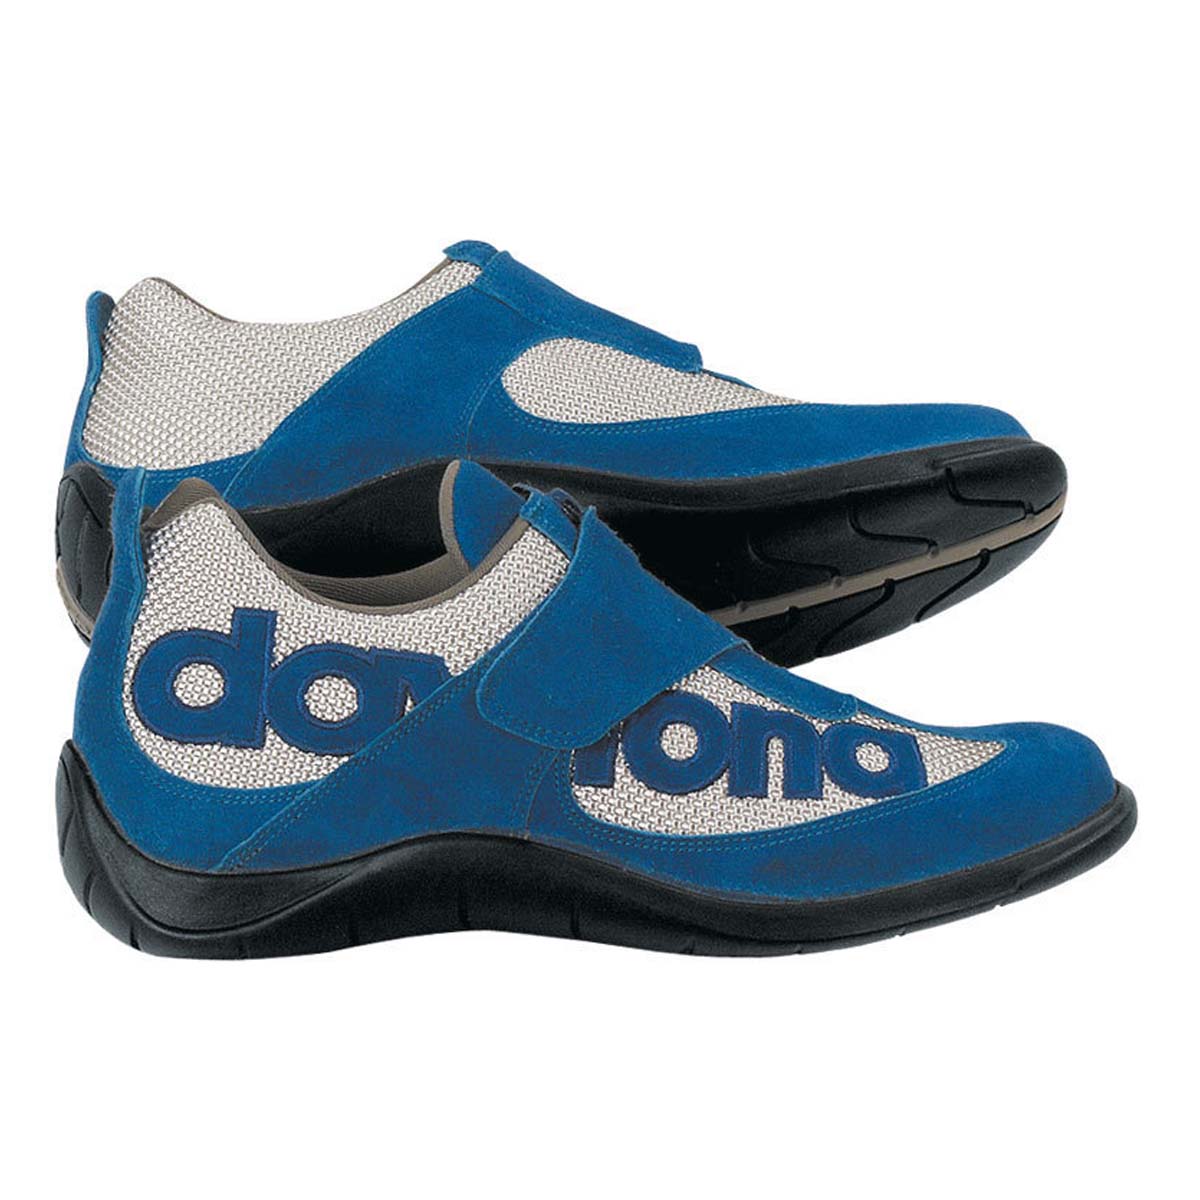 Shoes für Freizeit und Büro Daytona "Moto Fun" Schuhe in Rot-Silber Größe 41 